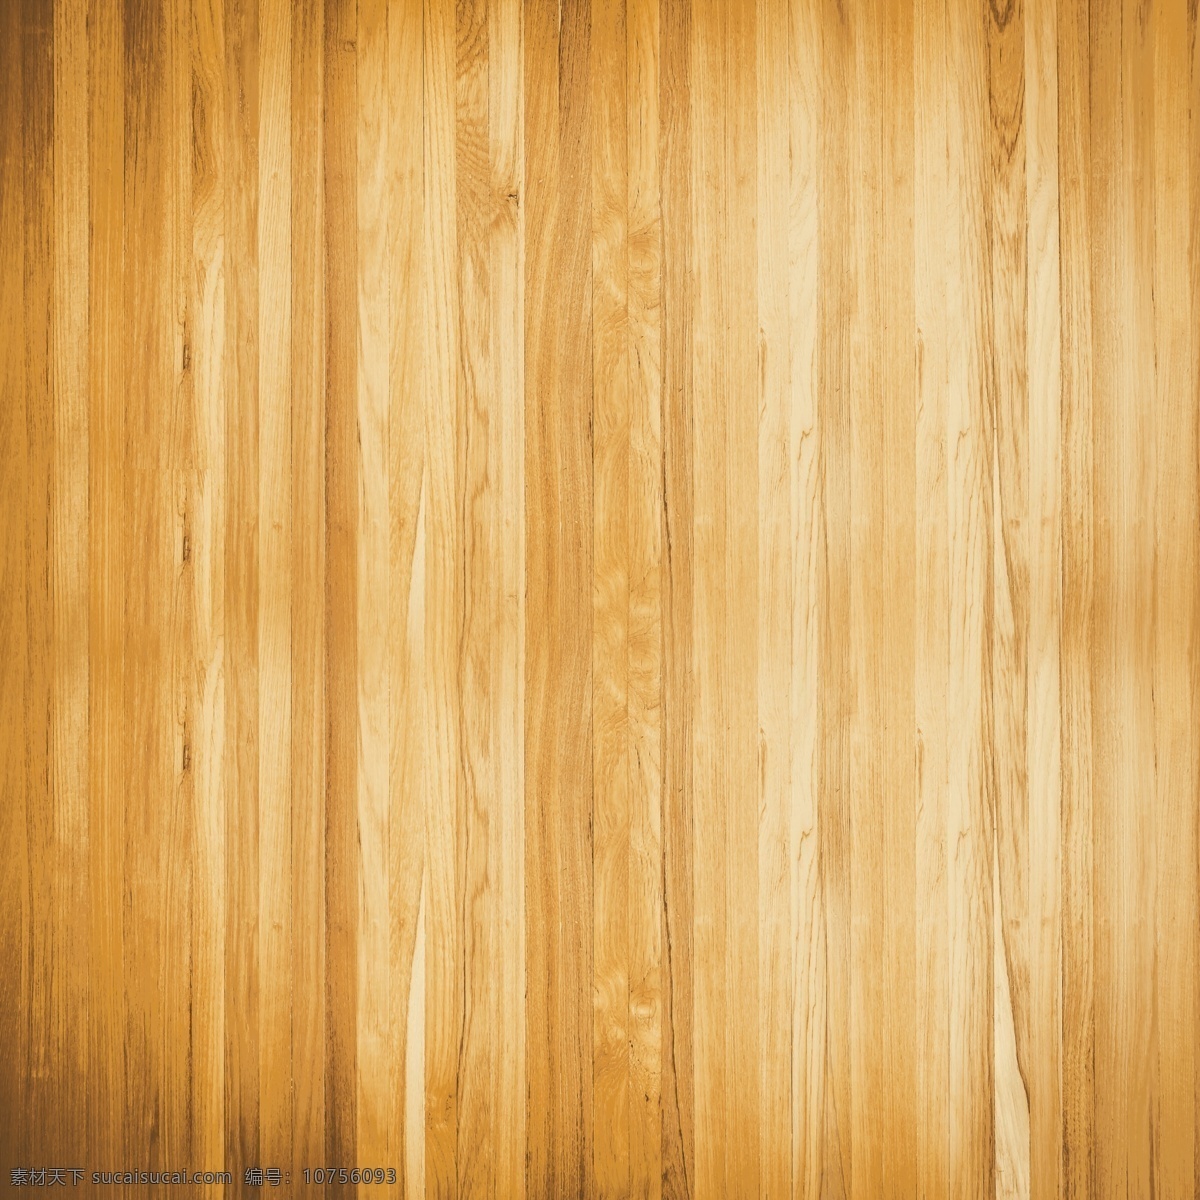 木板背景 木纹 木纹背景 纹路 木质 木板 材质 纹理 木制 高清 tiff 桌面 壁纸 拍摄 摆拍 高清摄影 木板摄影 木纹摄影 生物世界 树木树叶